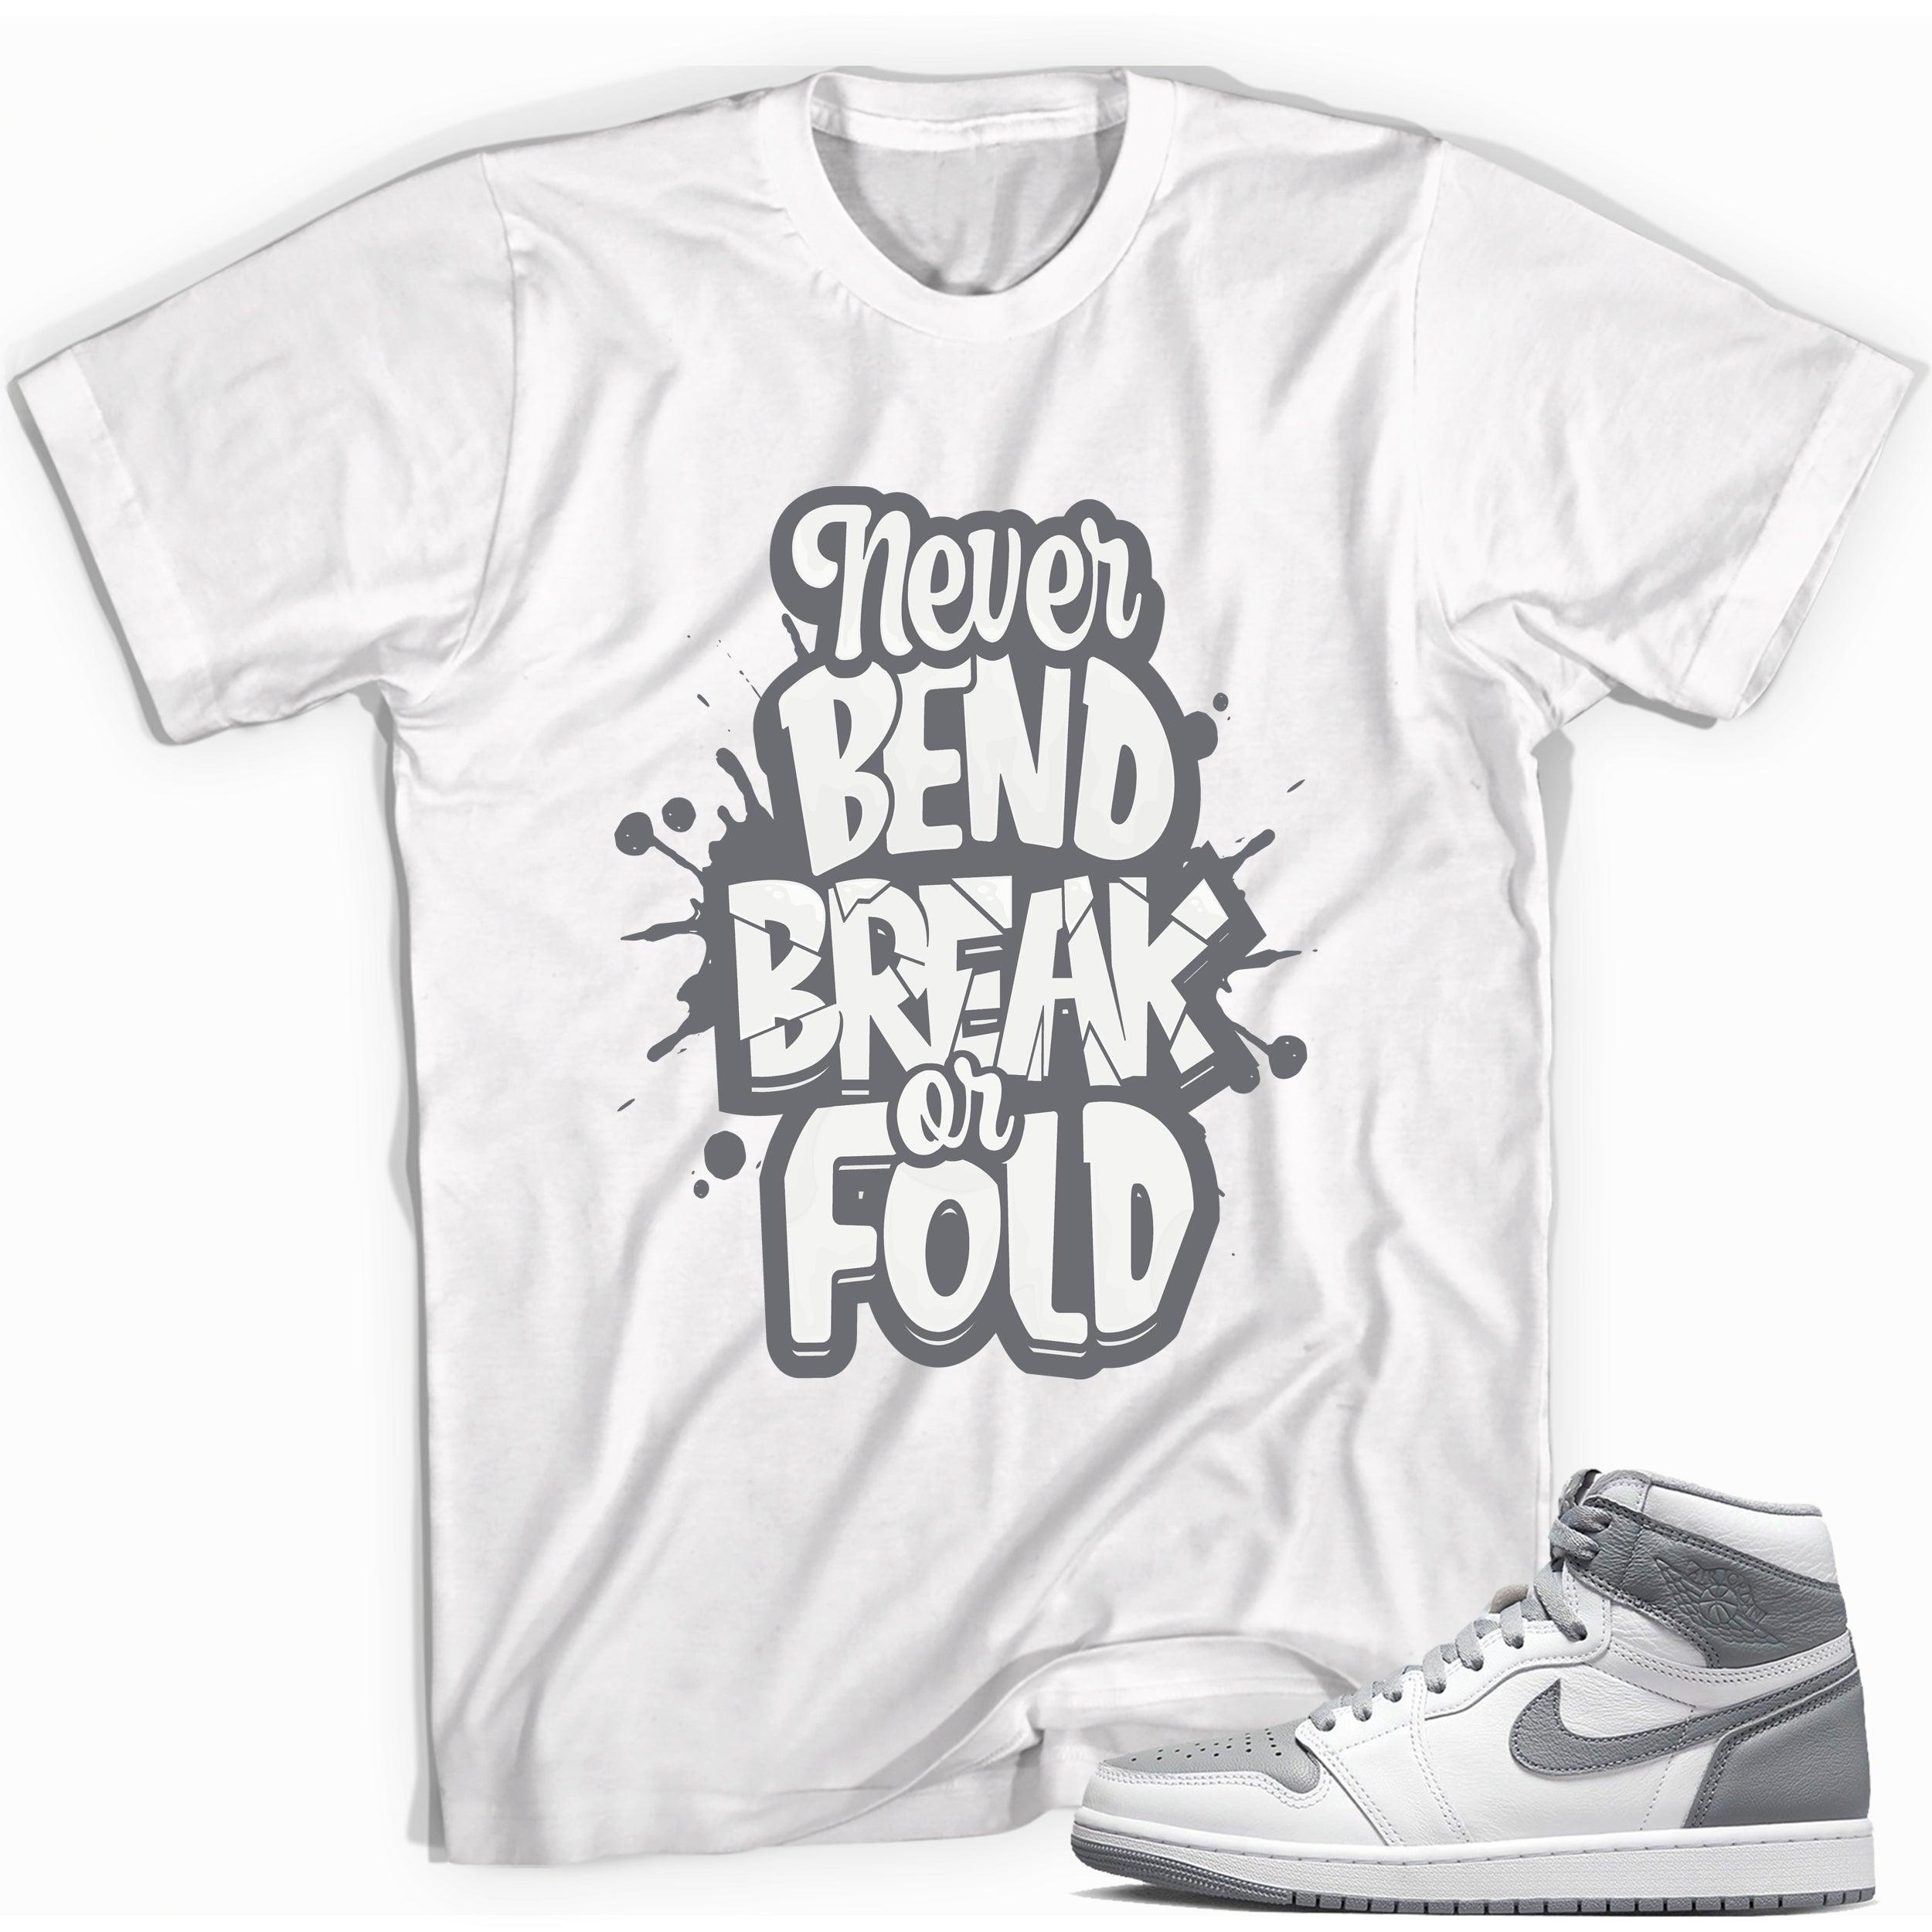 Jordan 1s High OG Stealth Shirt - Never Bend Break or Fold - Sneaker Shirts Outlet